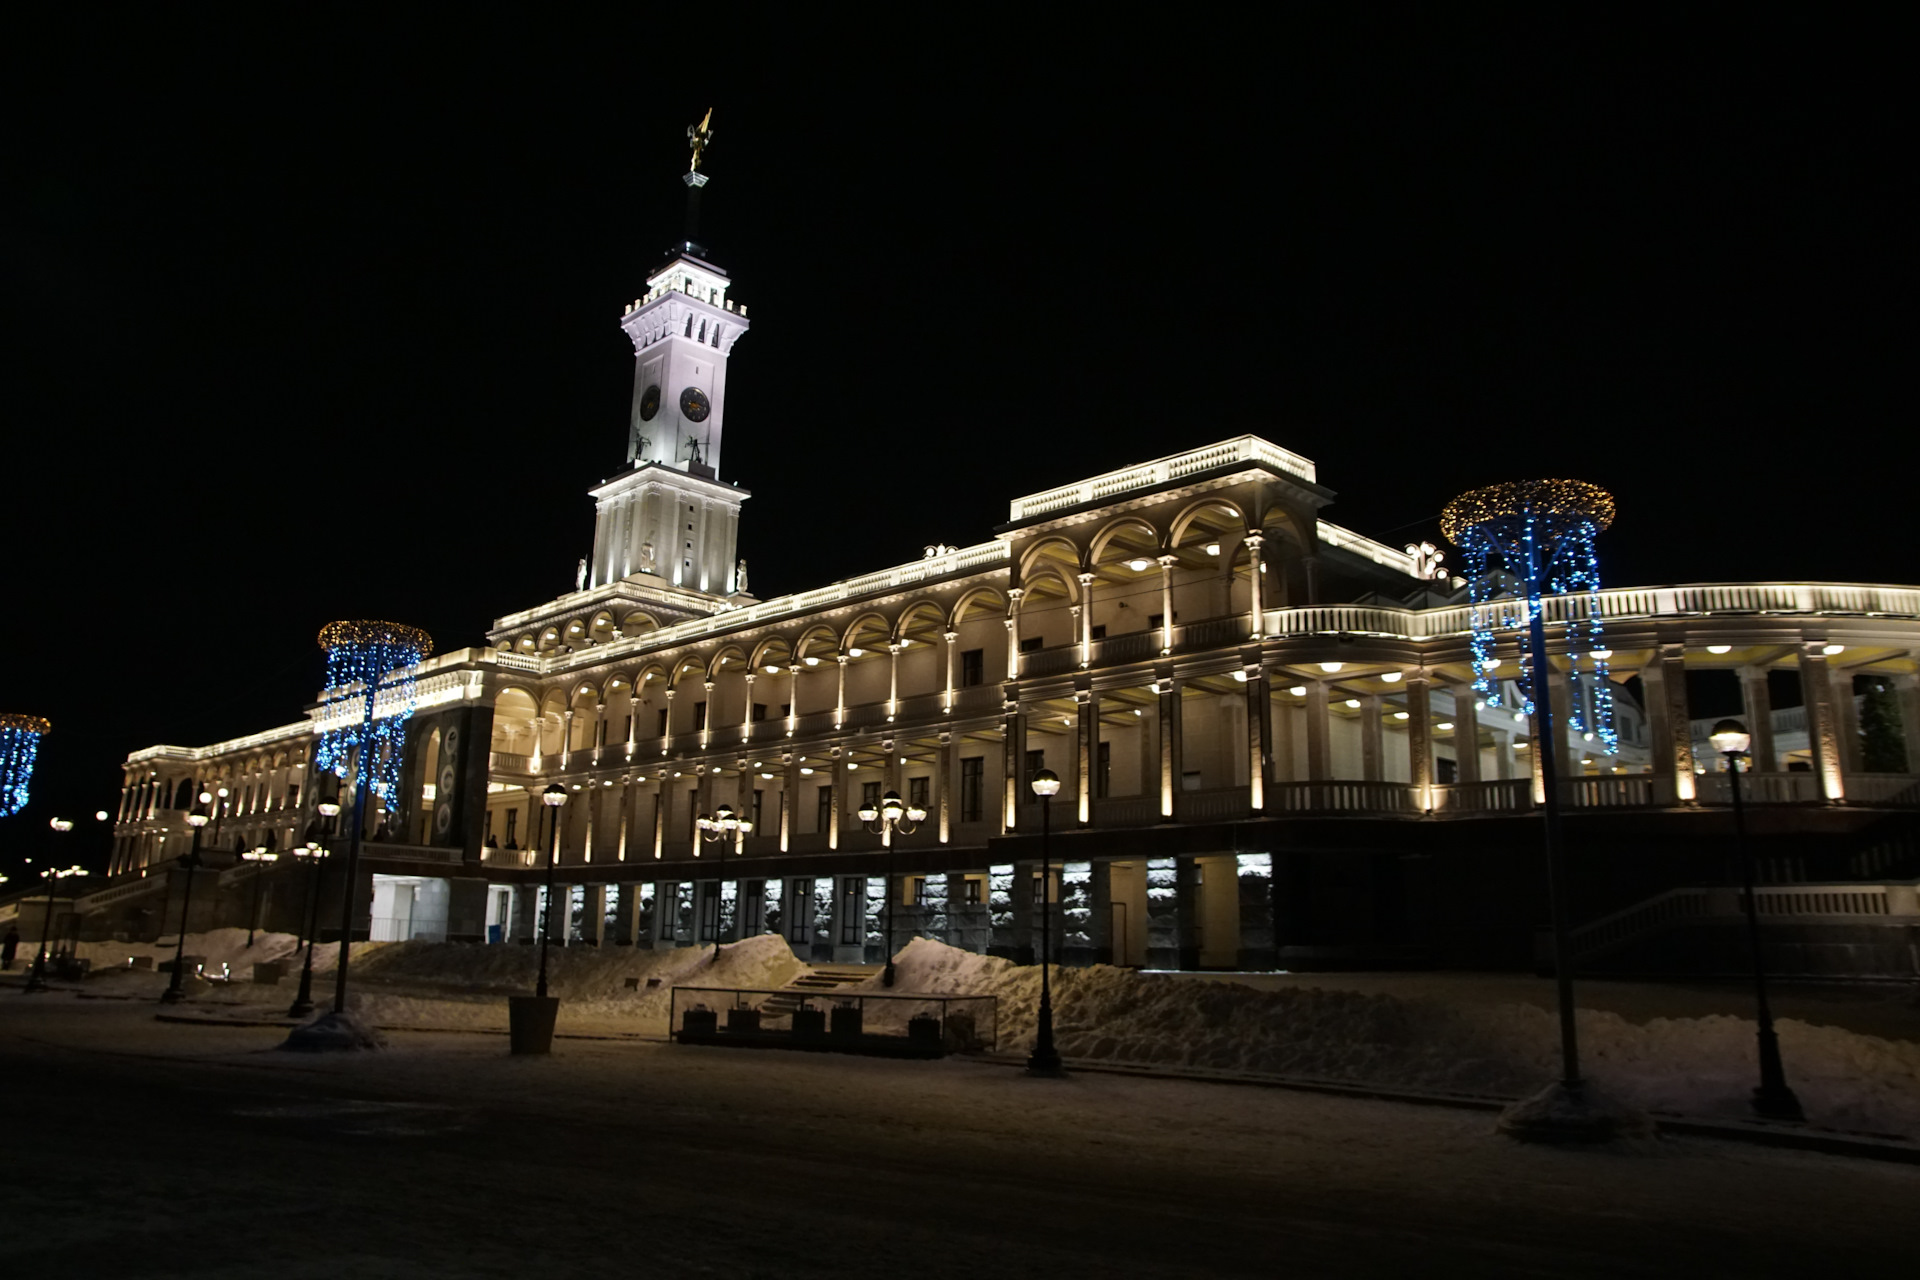 Московский вокзал зимой